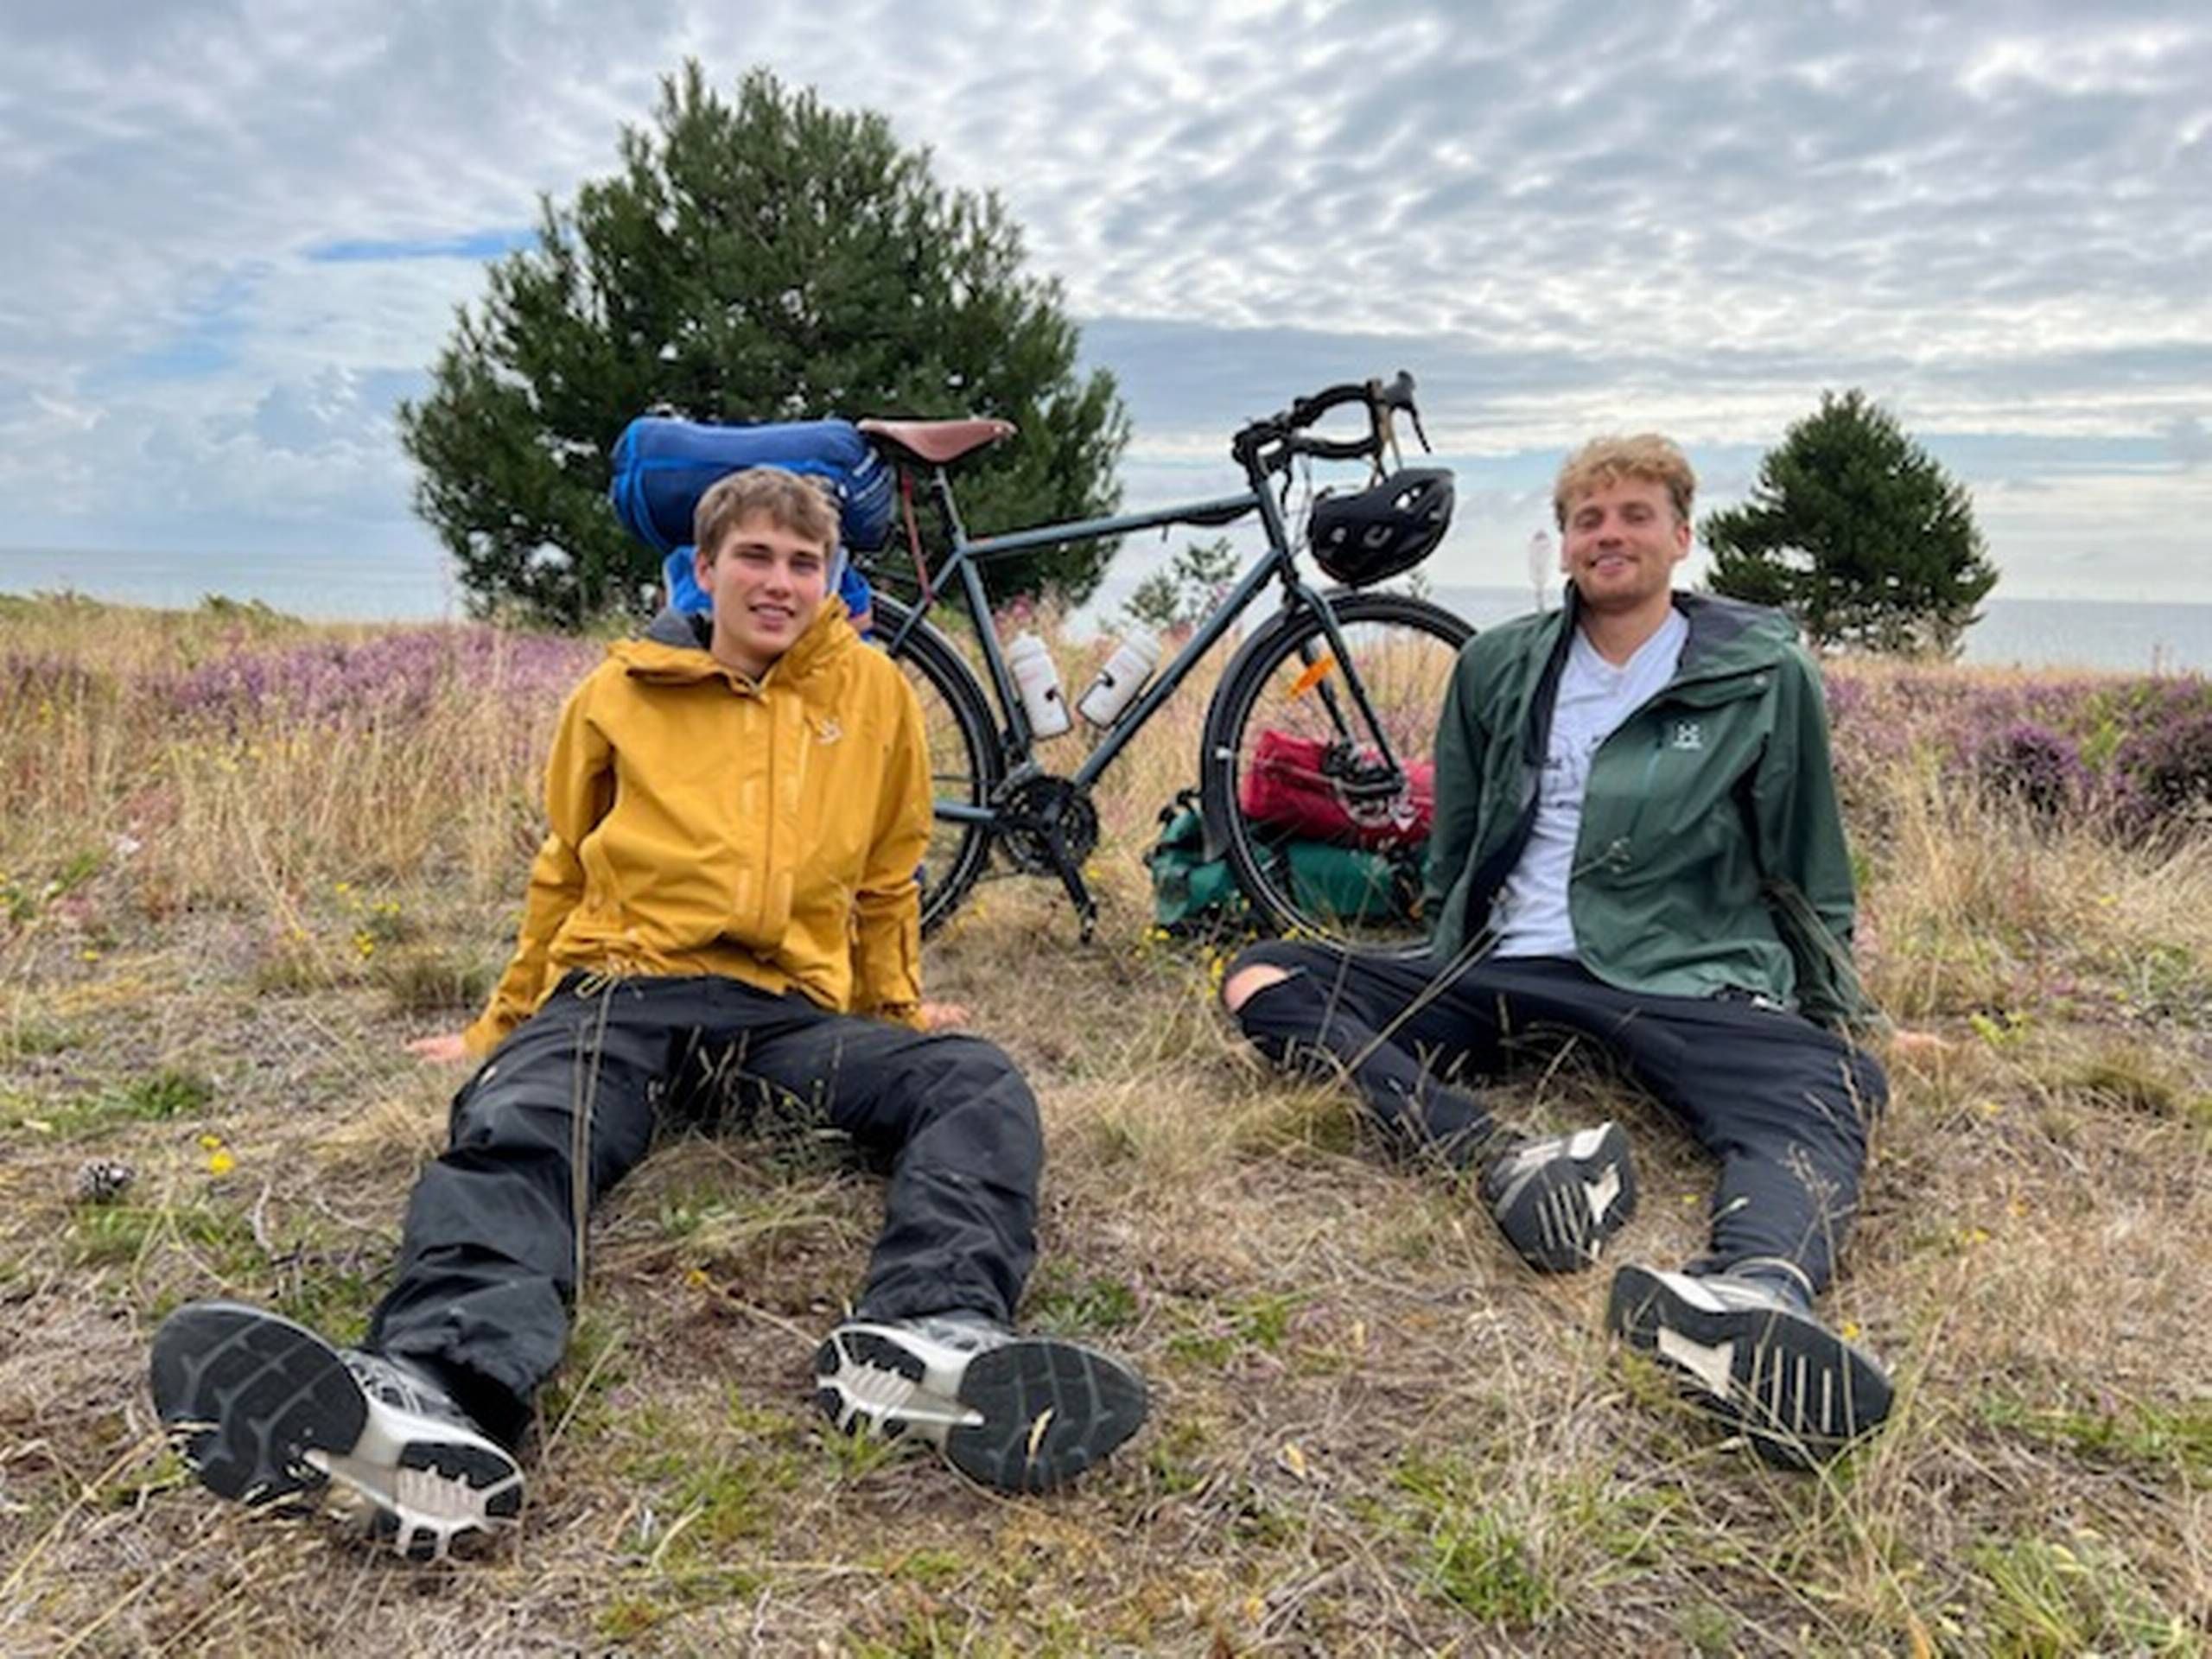 gentage røre ved websted To 'knejter' på jernheste over 15.000 kilometer: Jacob og Malthe rejser fra  Nordkap til Spanien på cykel